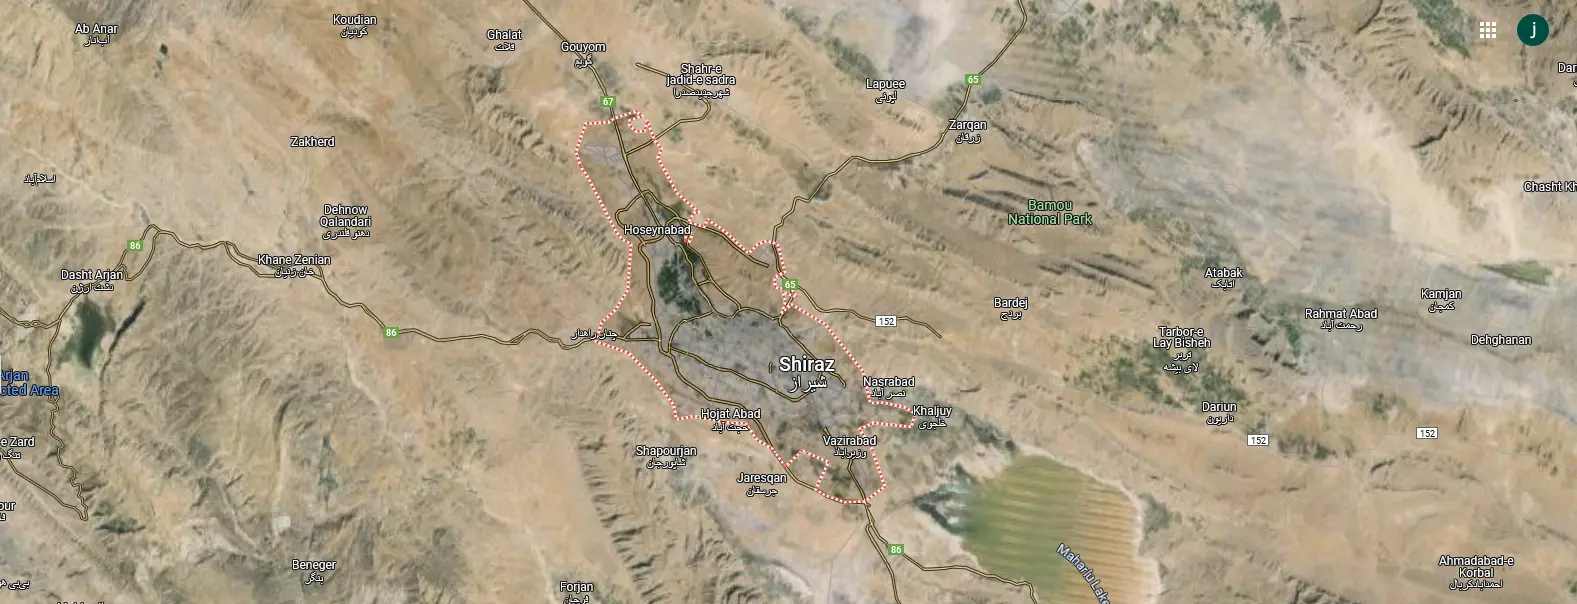 آدرس دقیق شیراز روی نقشه 5864